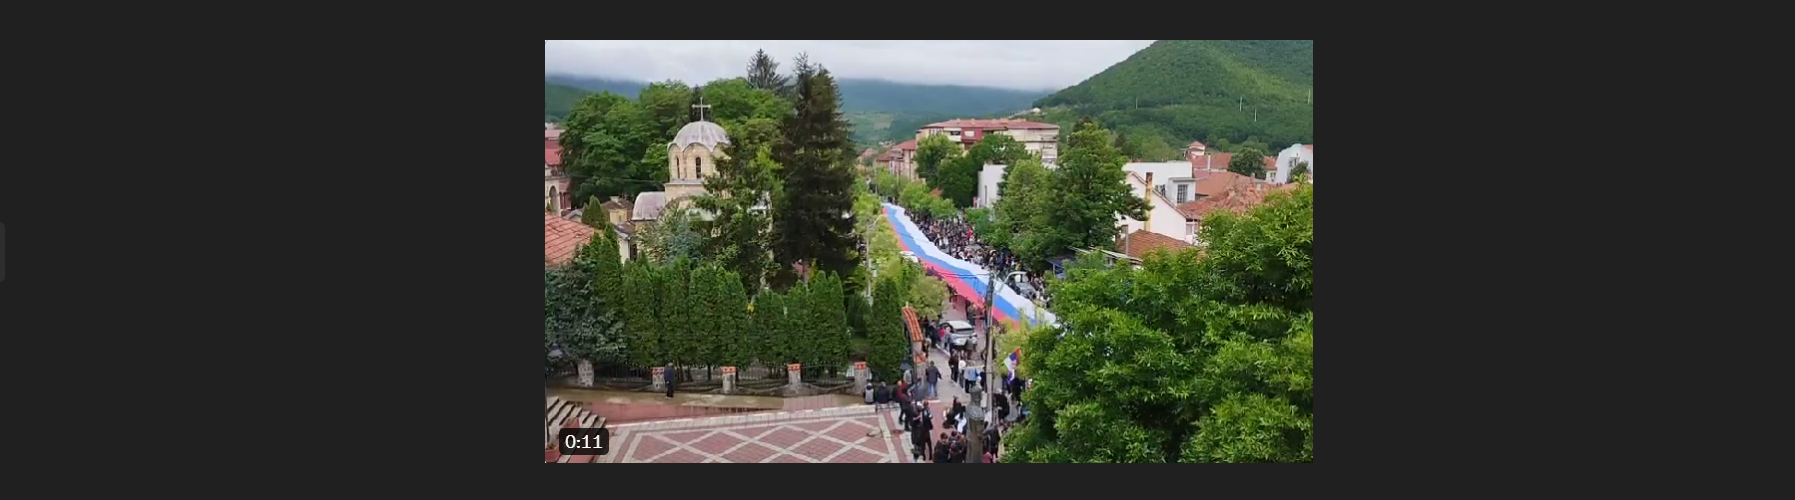 Κόσοβο: Σέρβοι πολίτες συγκεντρώθηκαν σήμερα μπροστά από το κτίριο του δήμου Σβετσάν